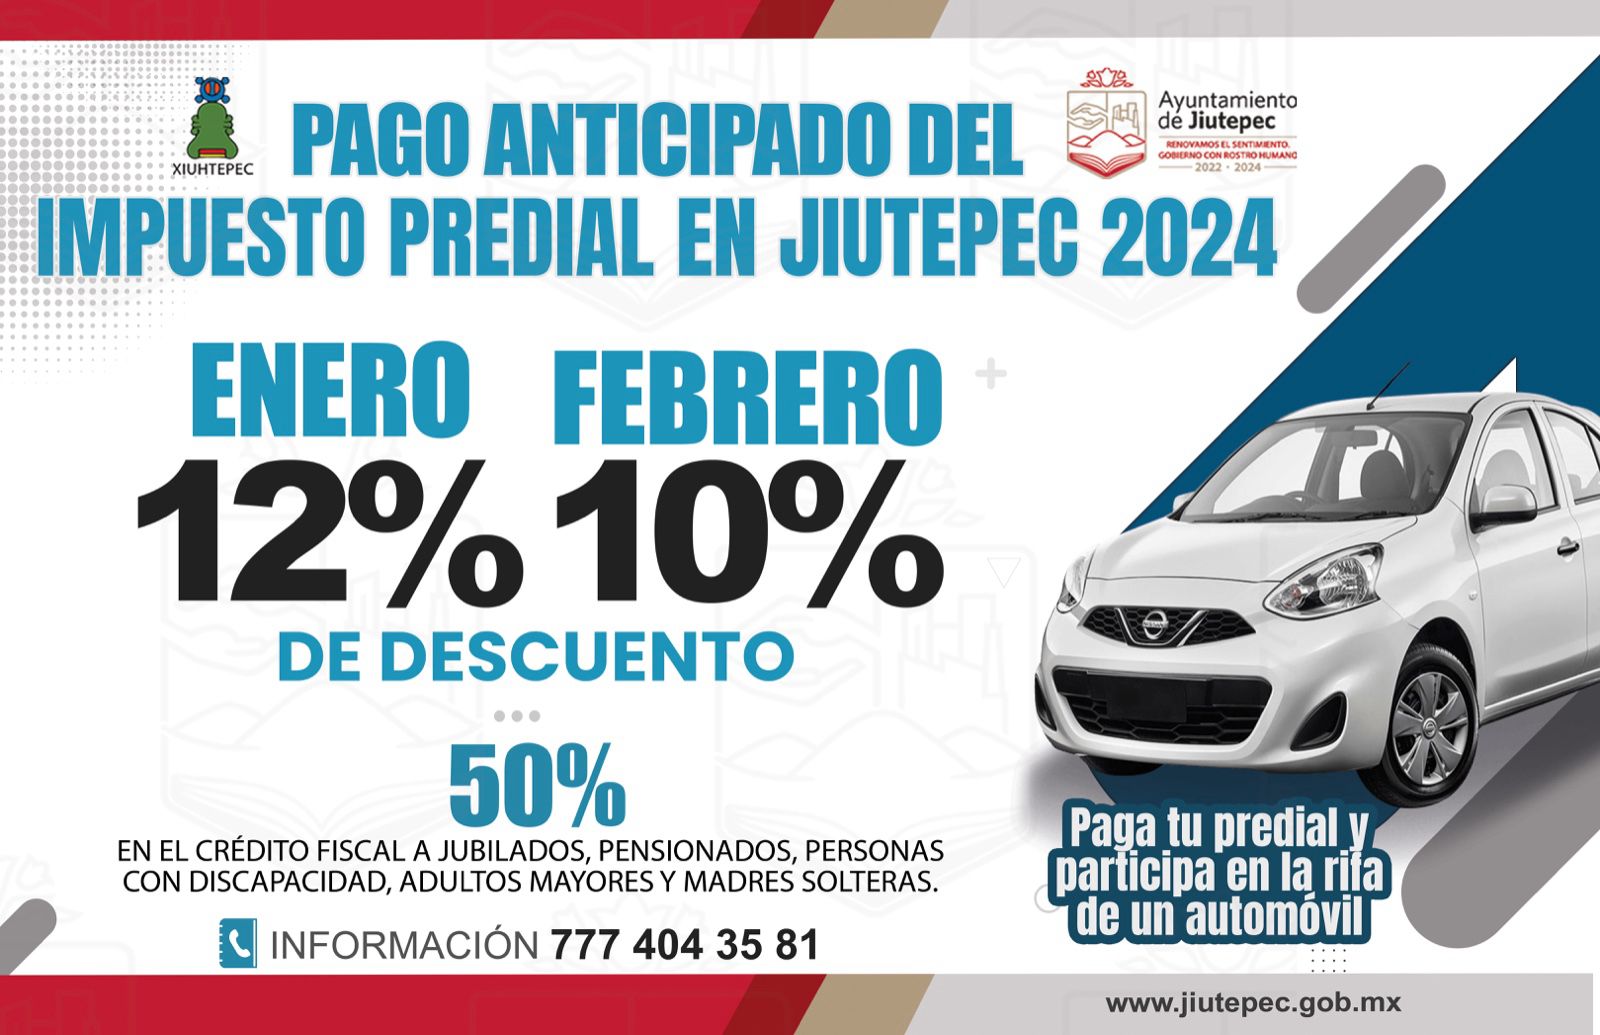 INICIA CAMPAÑA DE PAGO ANTICIPADO DEL IMPUESTO PREDIAL 2024 EN JIUTEPEC